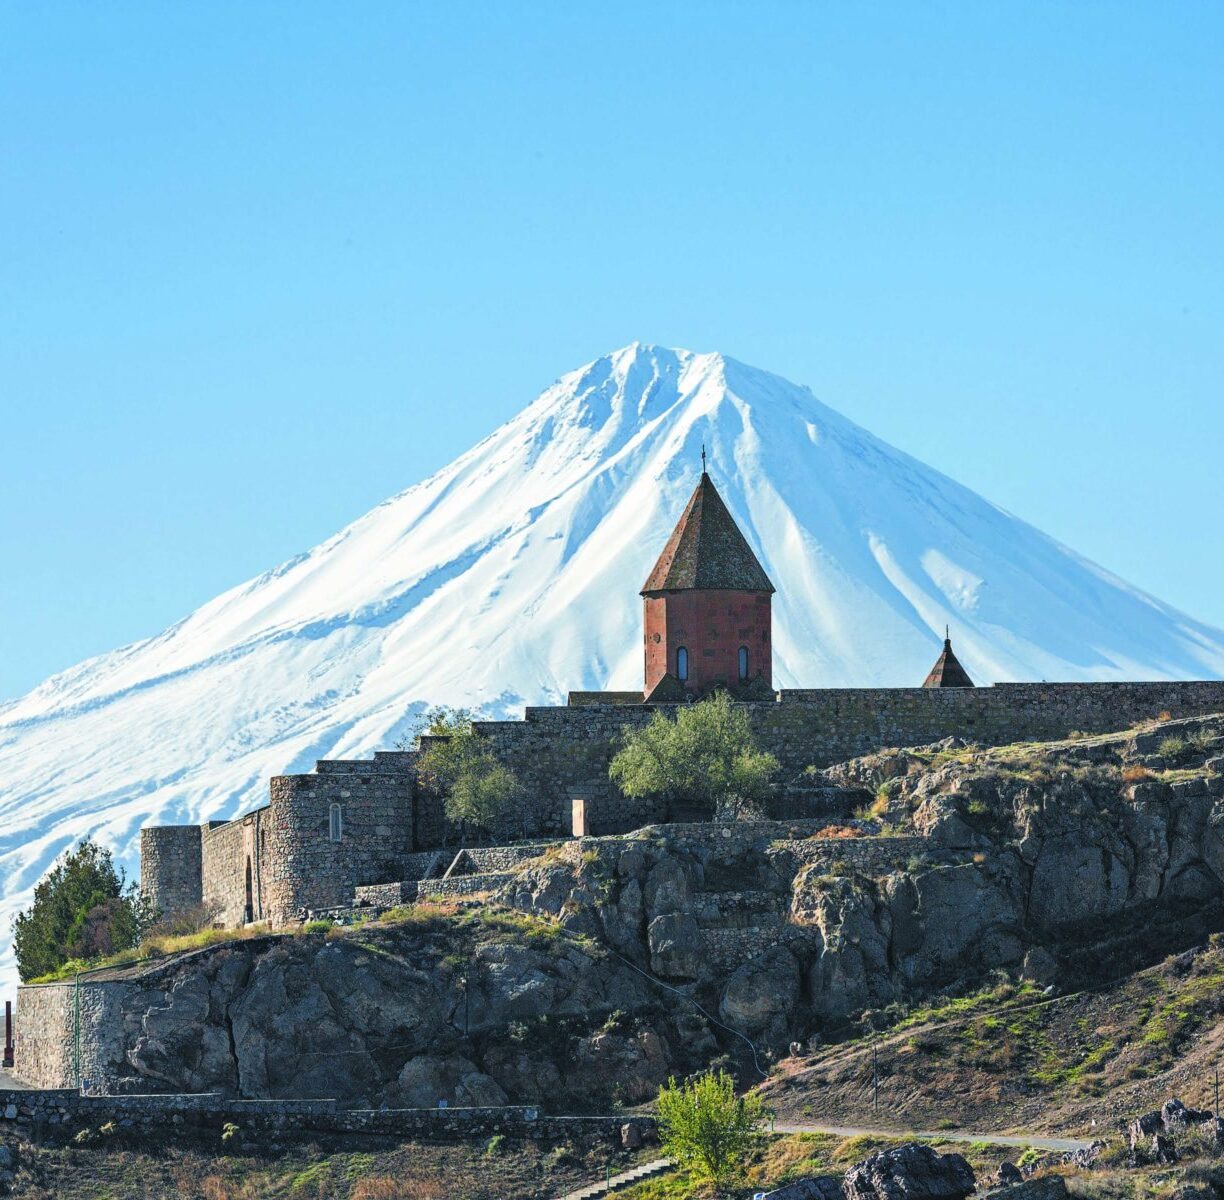 Armenia taxes